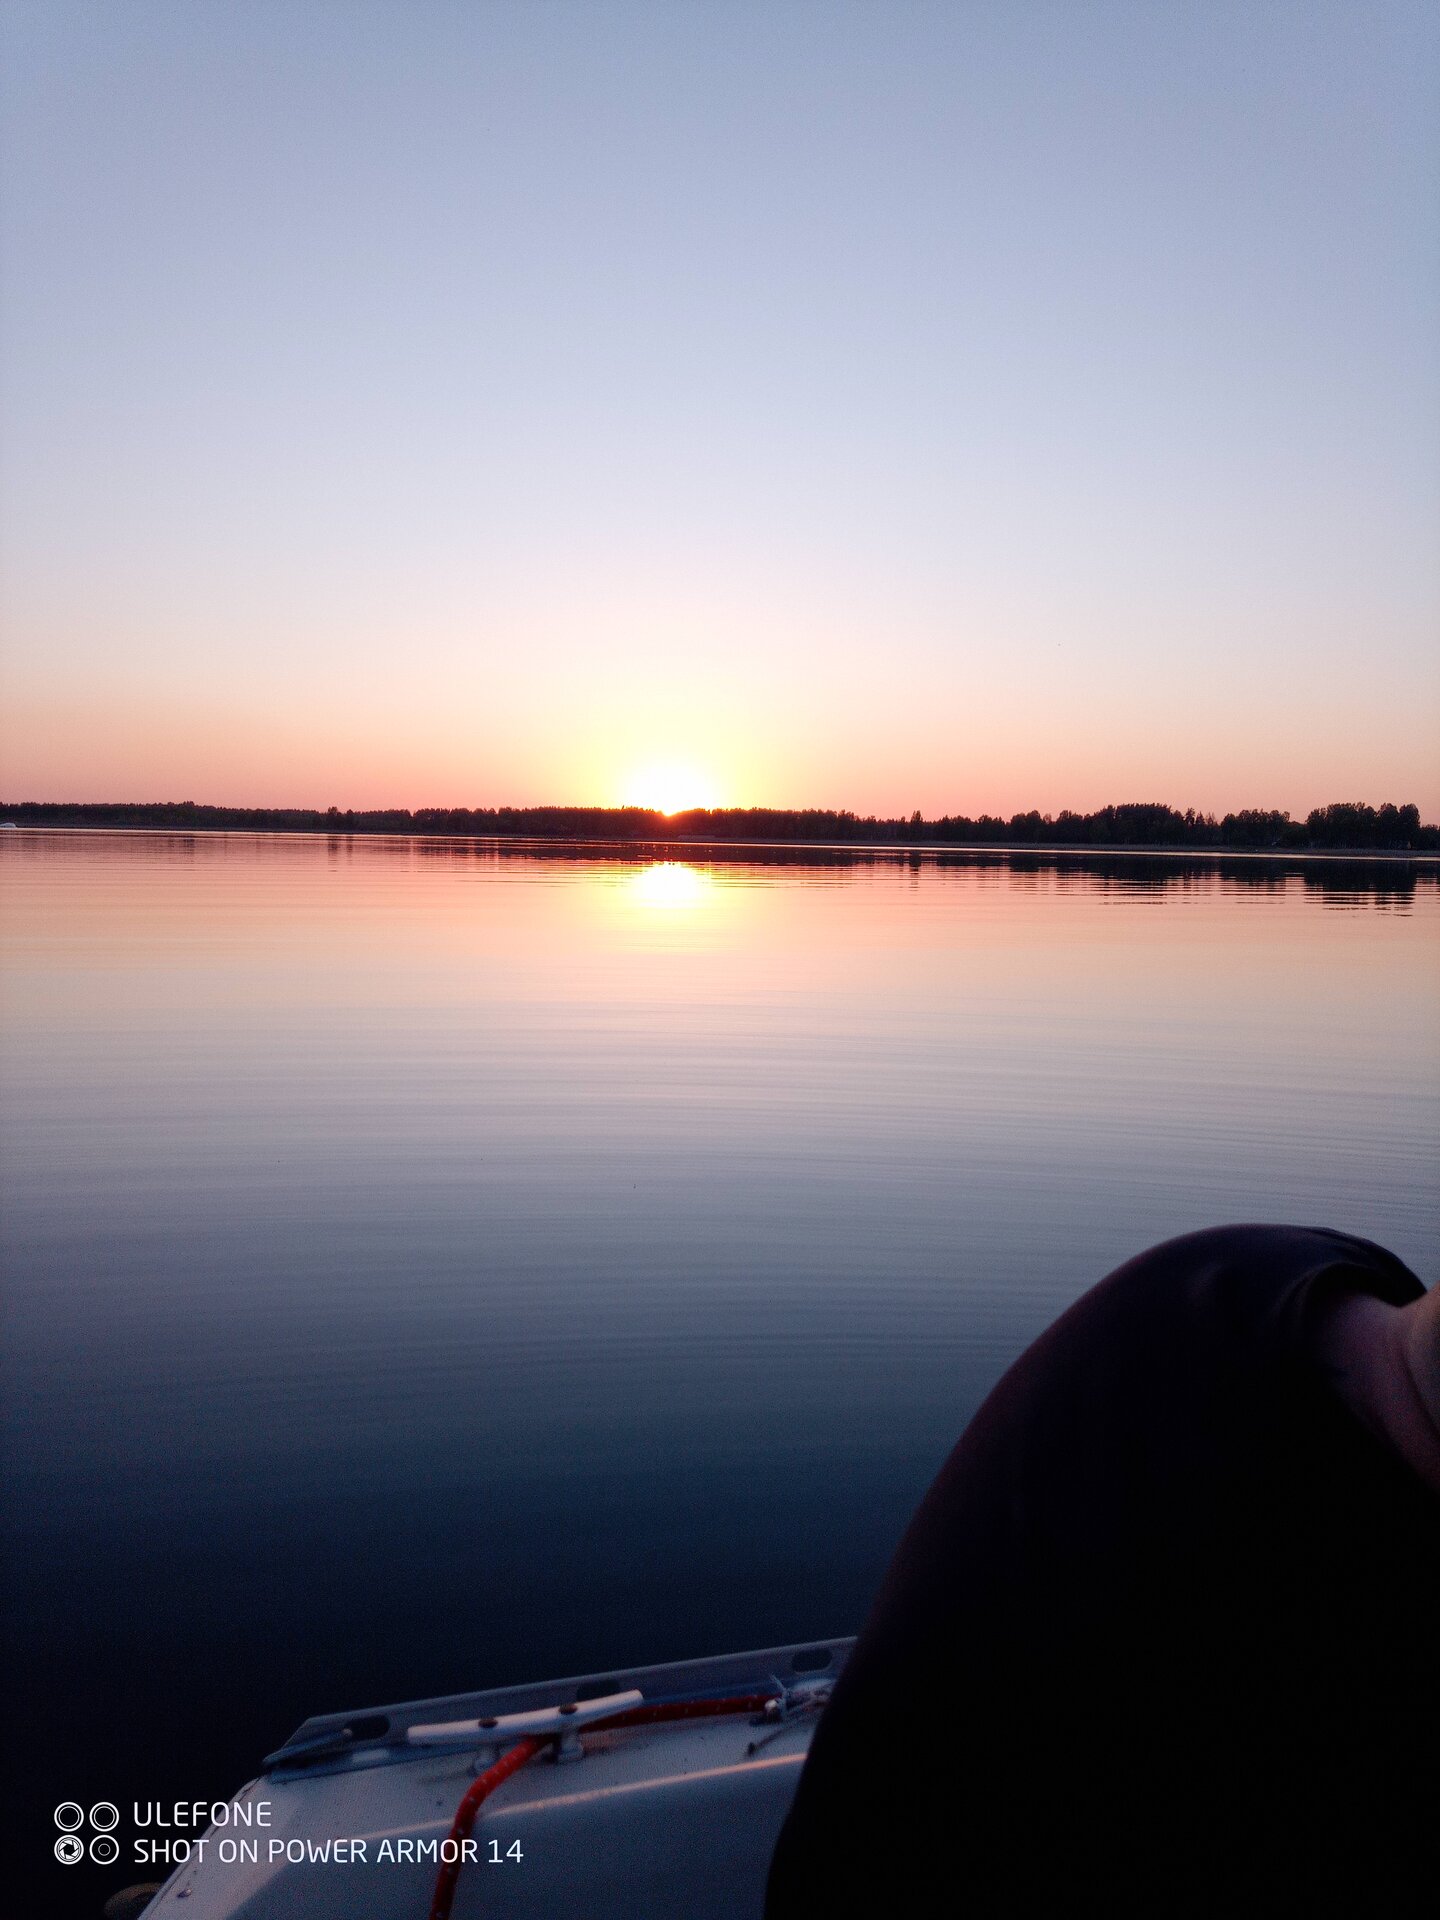 Romantiline päikeseloojangu sõit purjekaga Tamula järvel.